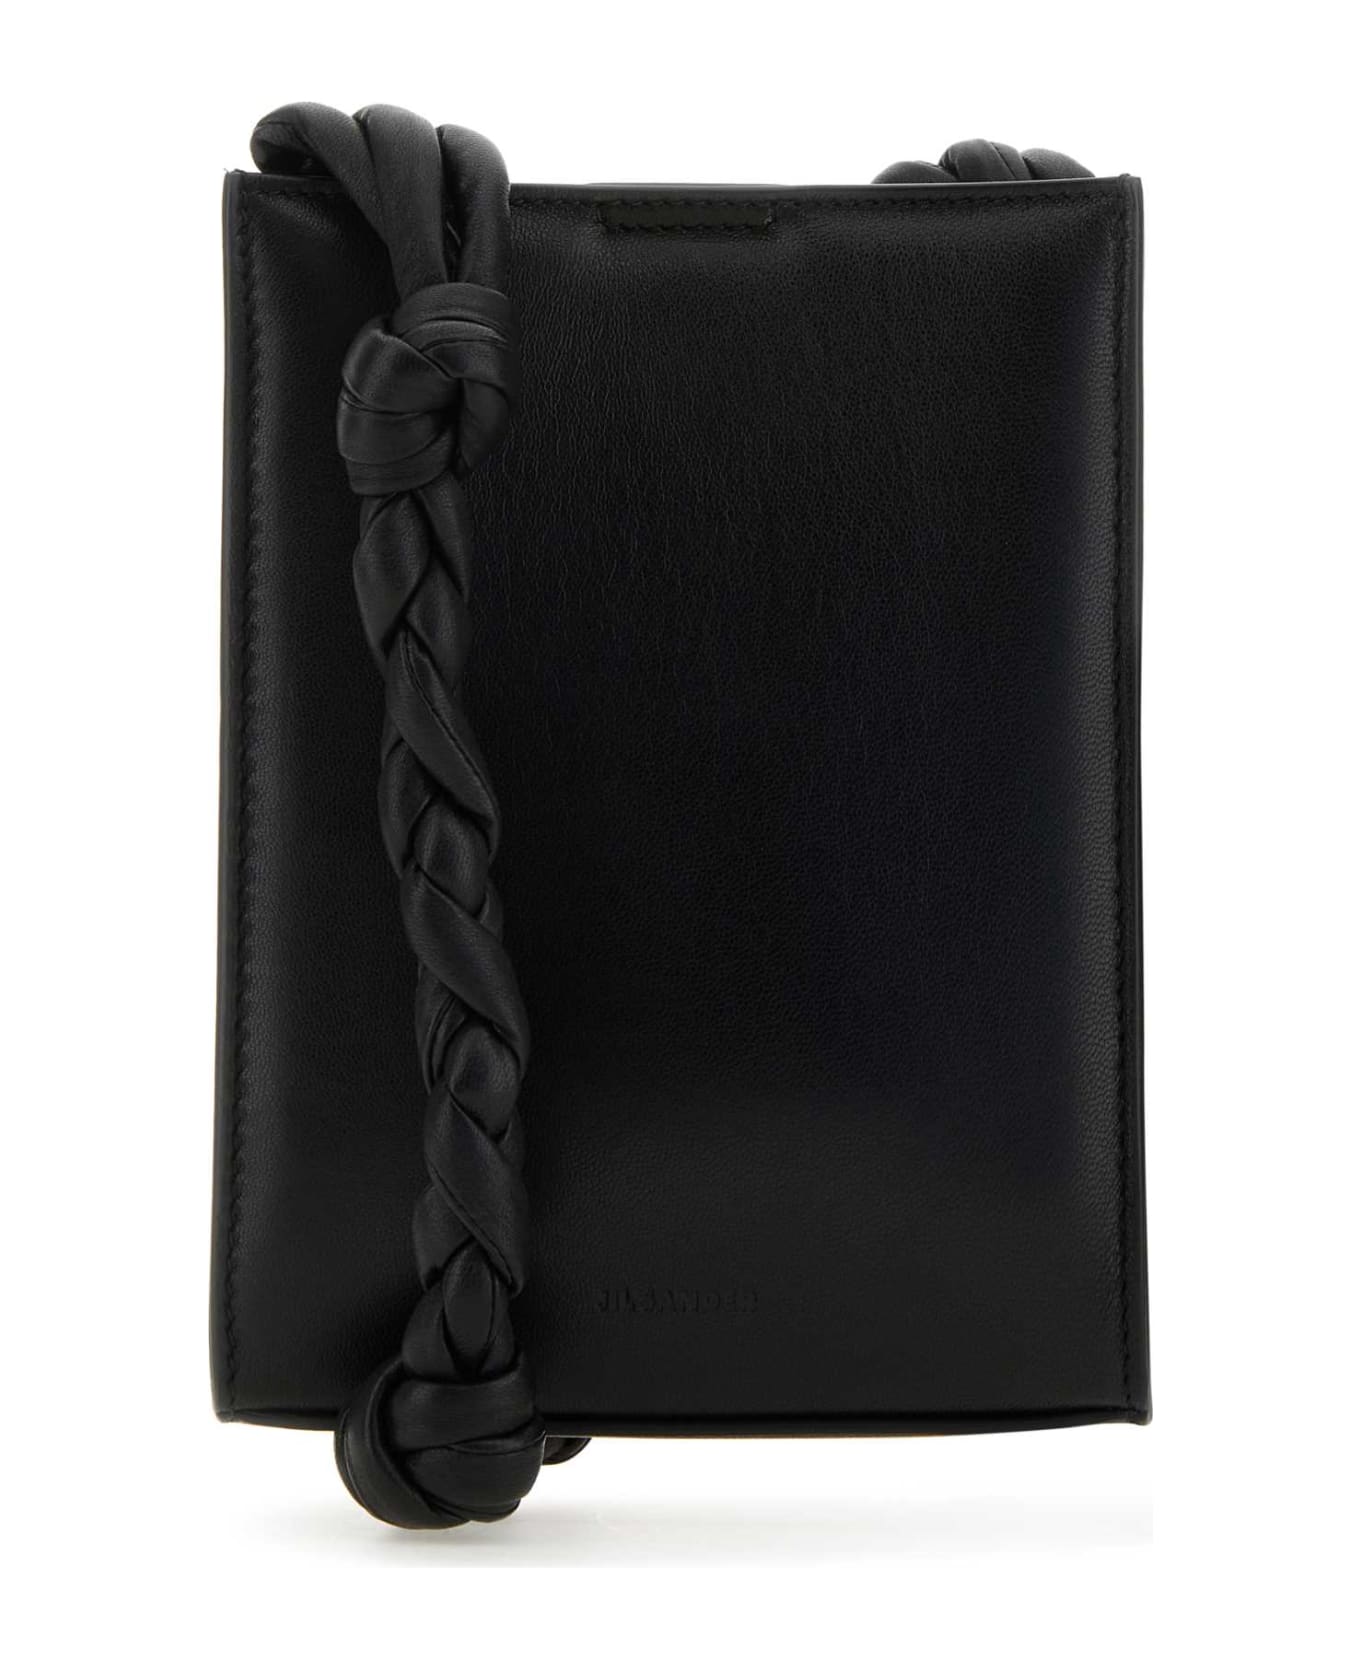 Jil Sander Black Leather Tangle Shoulder Bag - 001